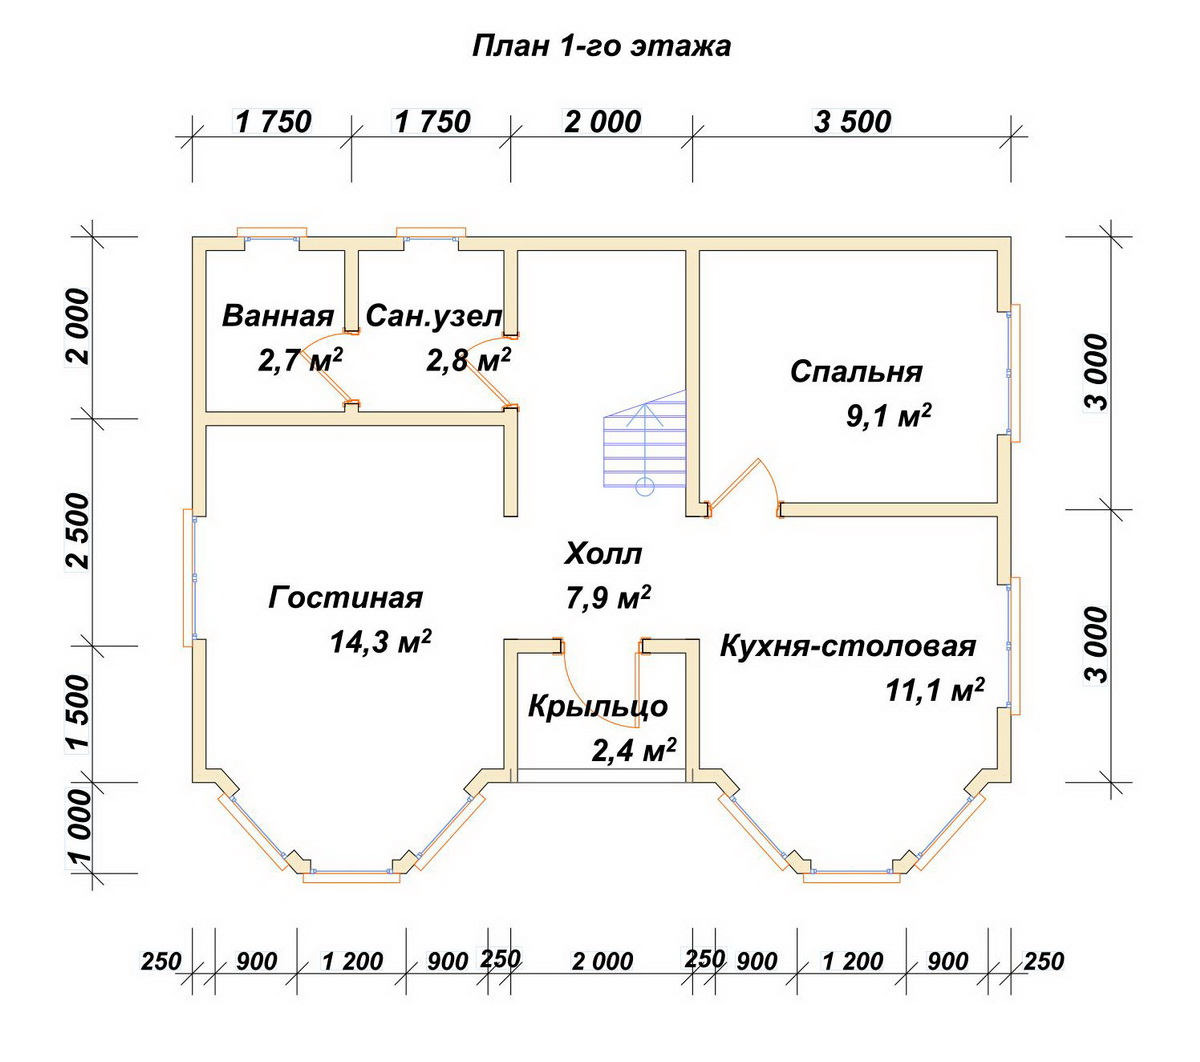 Планировка 1-го этаж дома ДБ-207